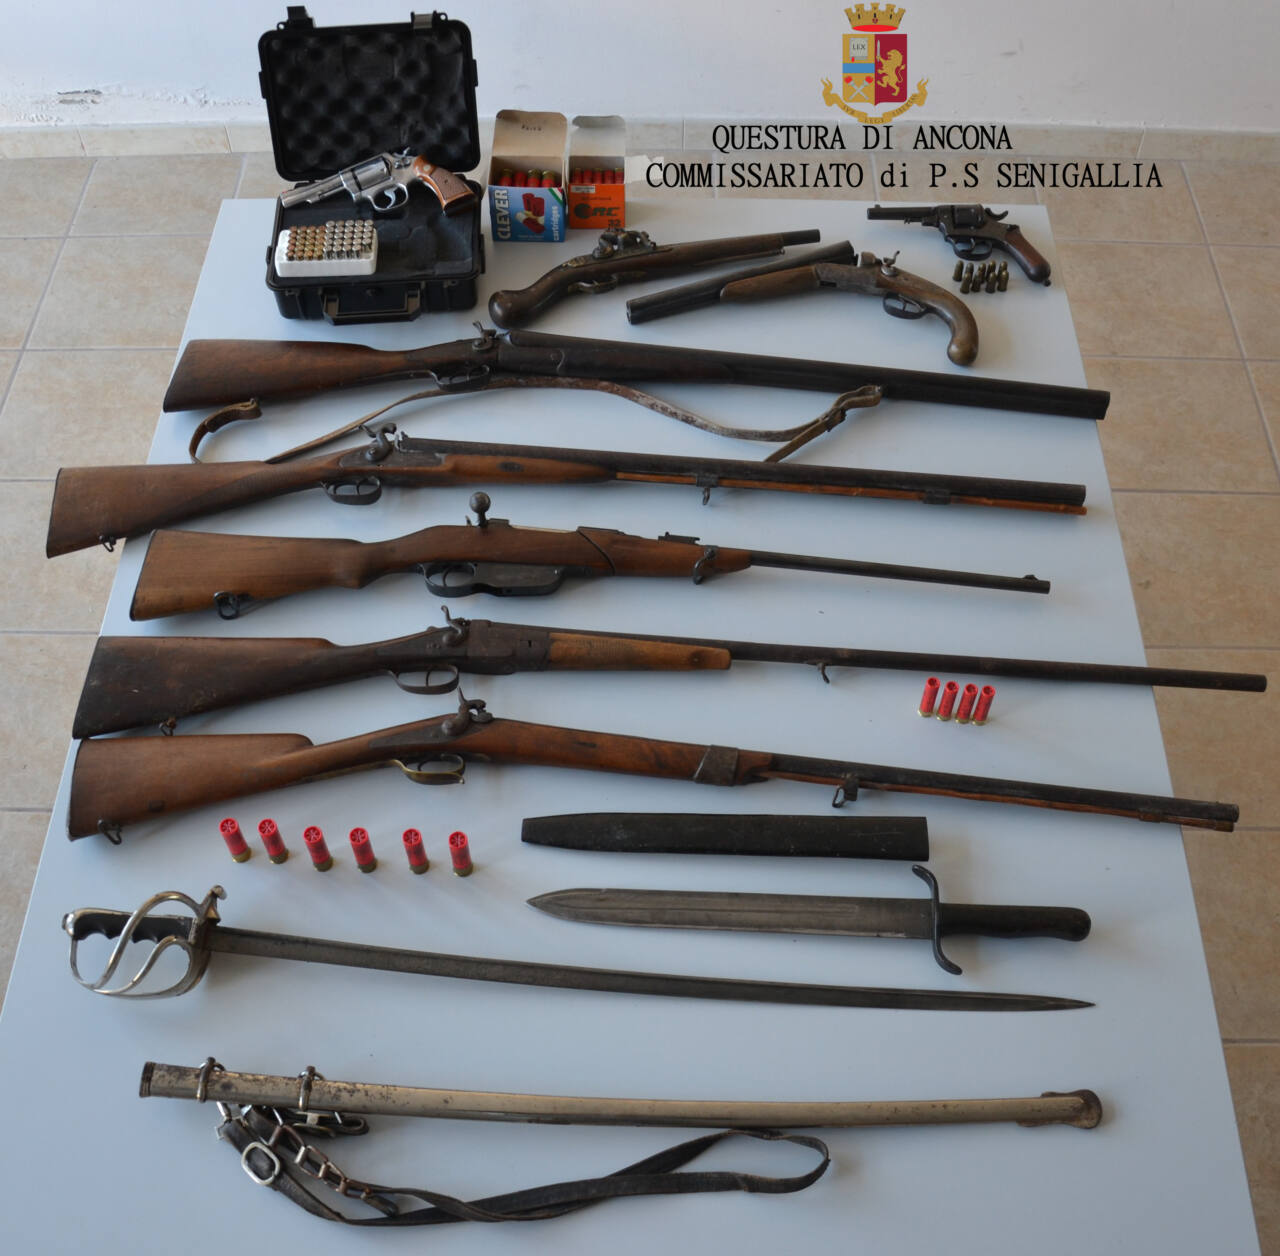 Le armi sequestrate dalla Polizia di Senigallia